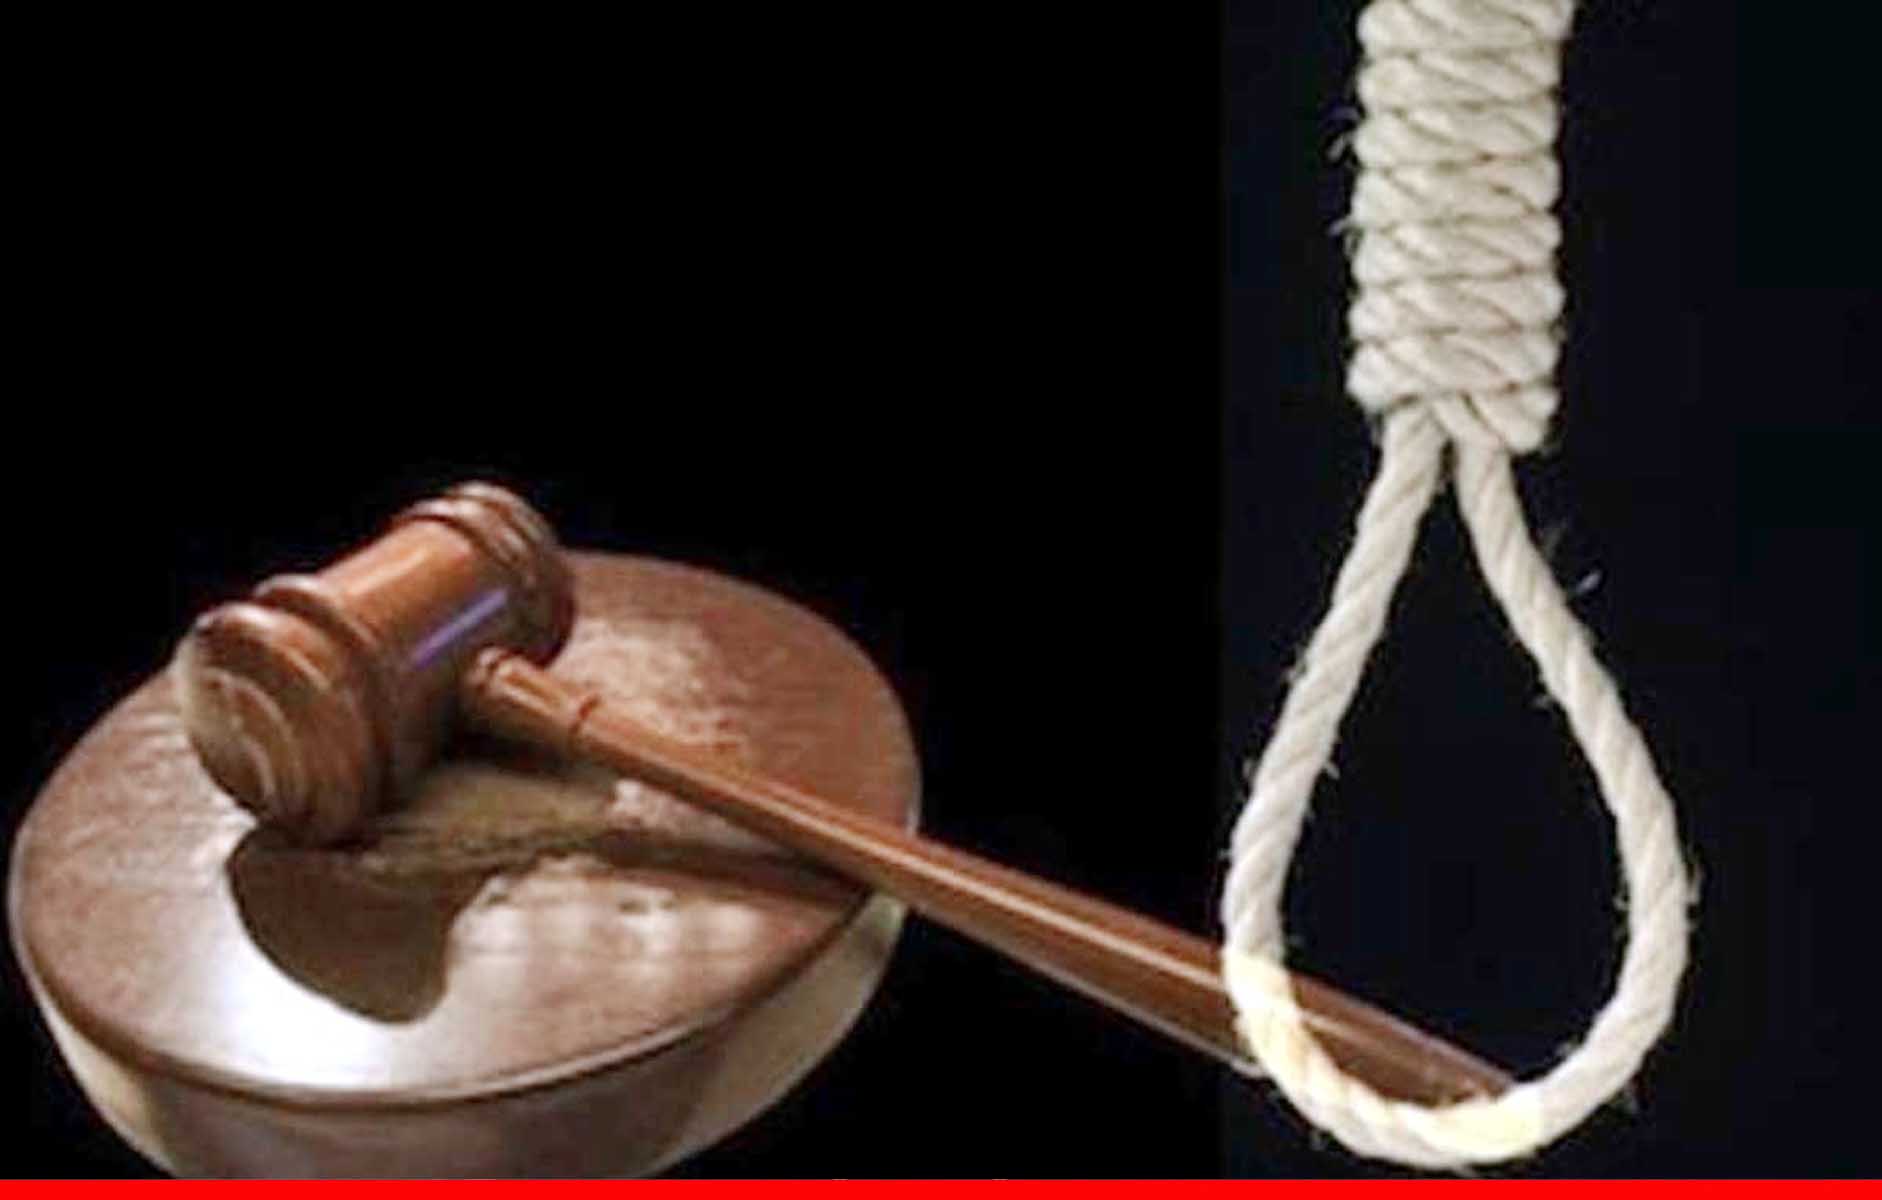 महाराष्ट्र: मां की हत्या की, शव चीर कर किडनी और आंतें निकाली, कलयुगी कपूत को मौत की सजा